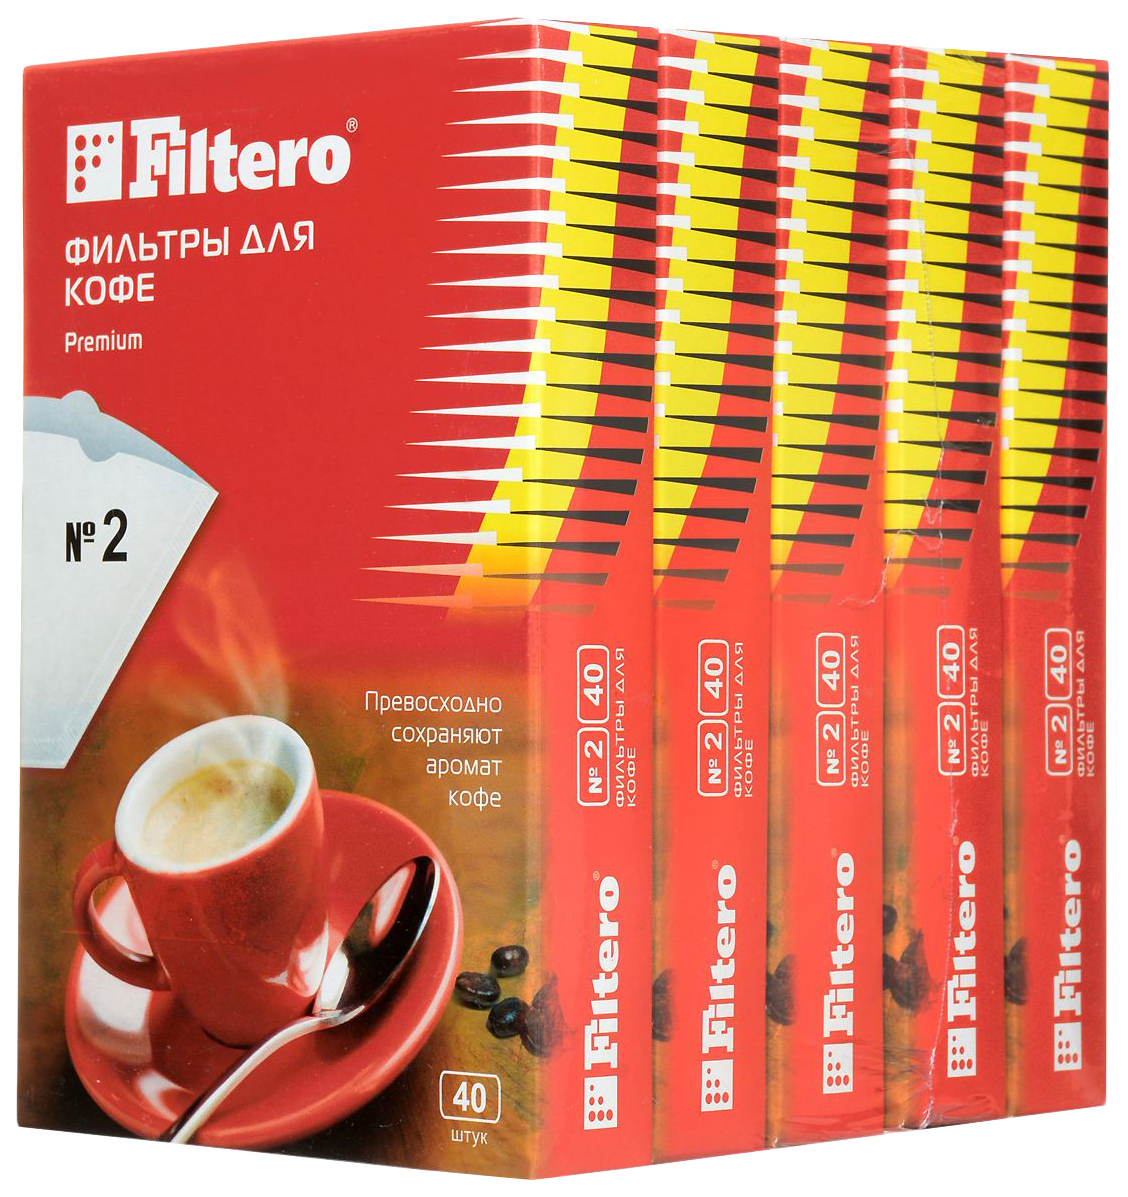 Фильтр Filtero Premium №2 фильтры для кофе для кофеварок капельного типа filtero 2 коричневый упак 80шт